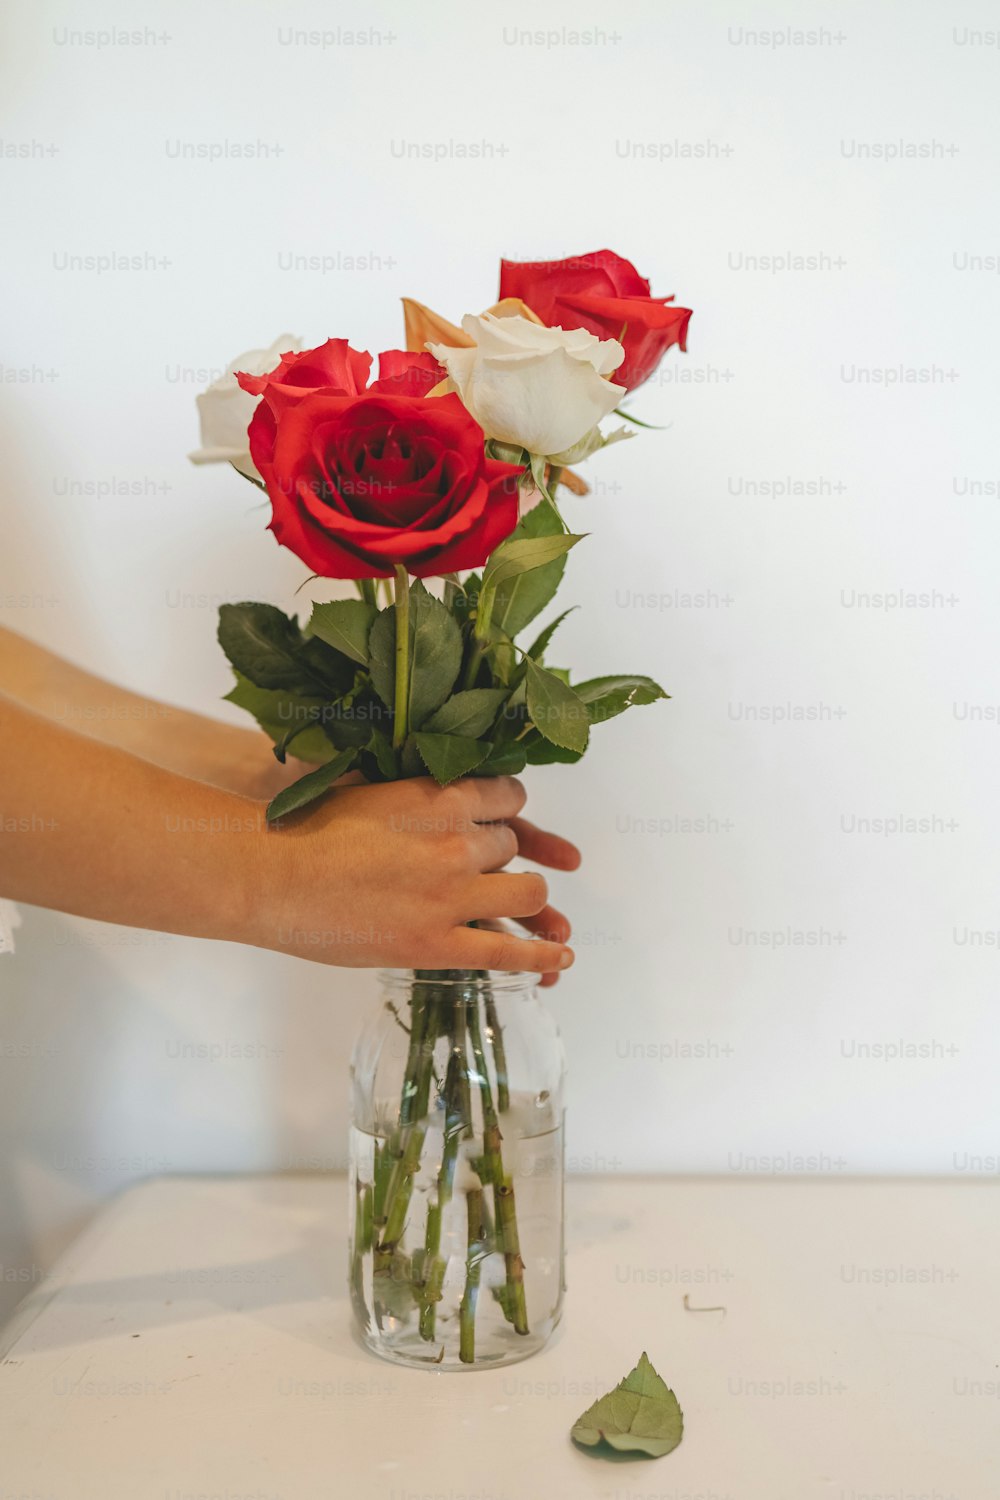 una persona che tiene un vaso con delle rose in esso